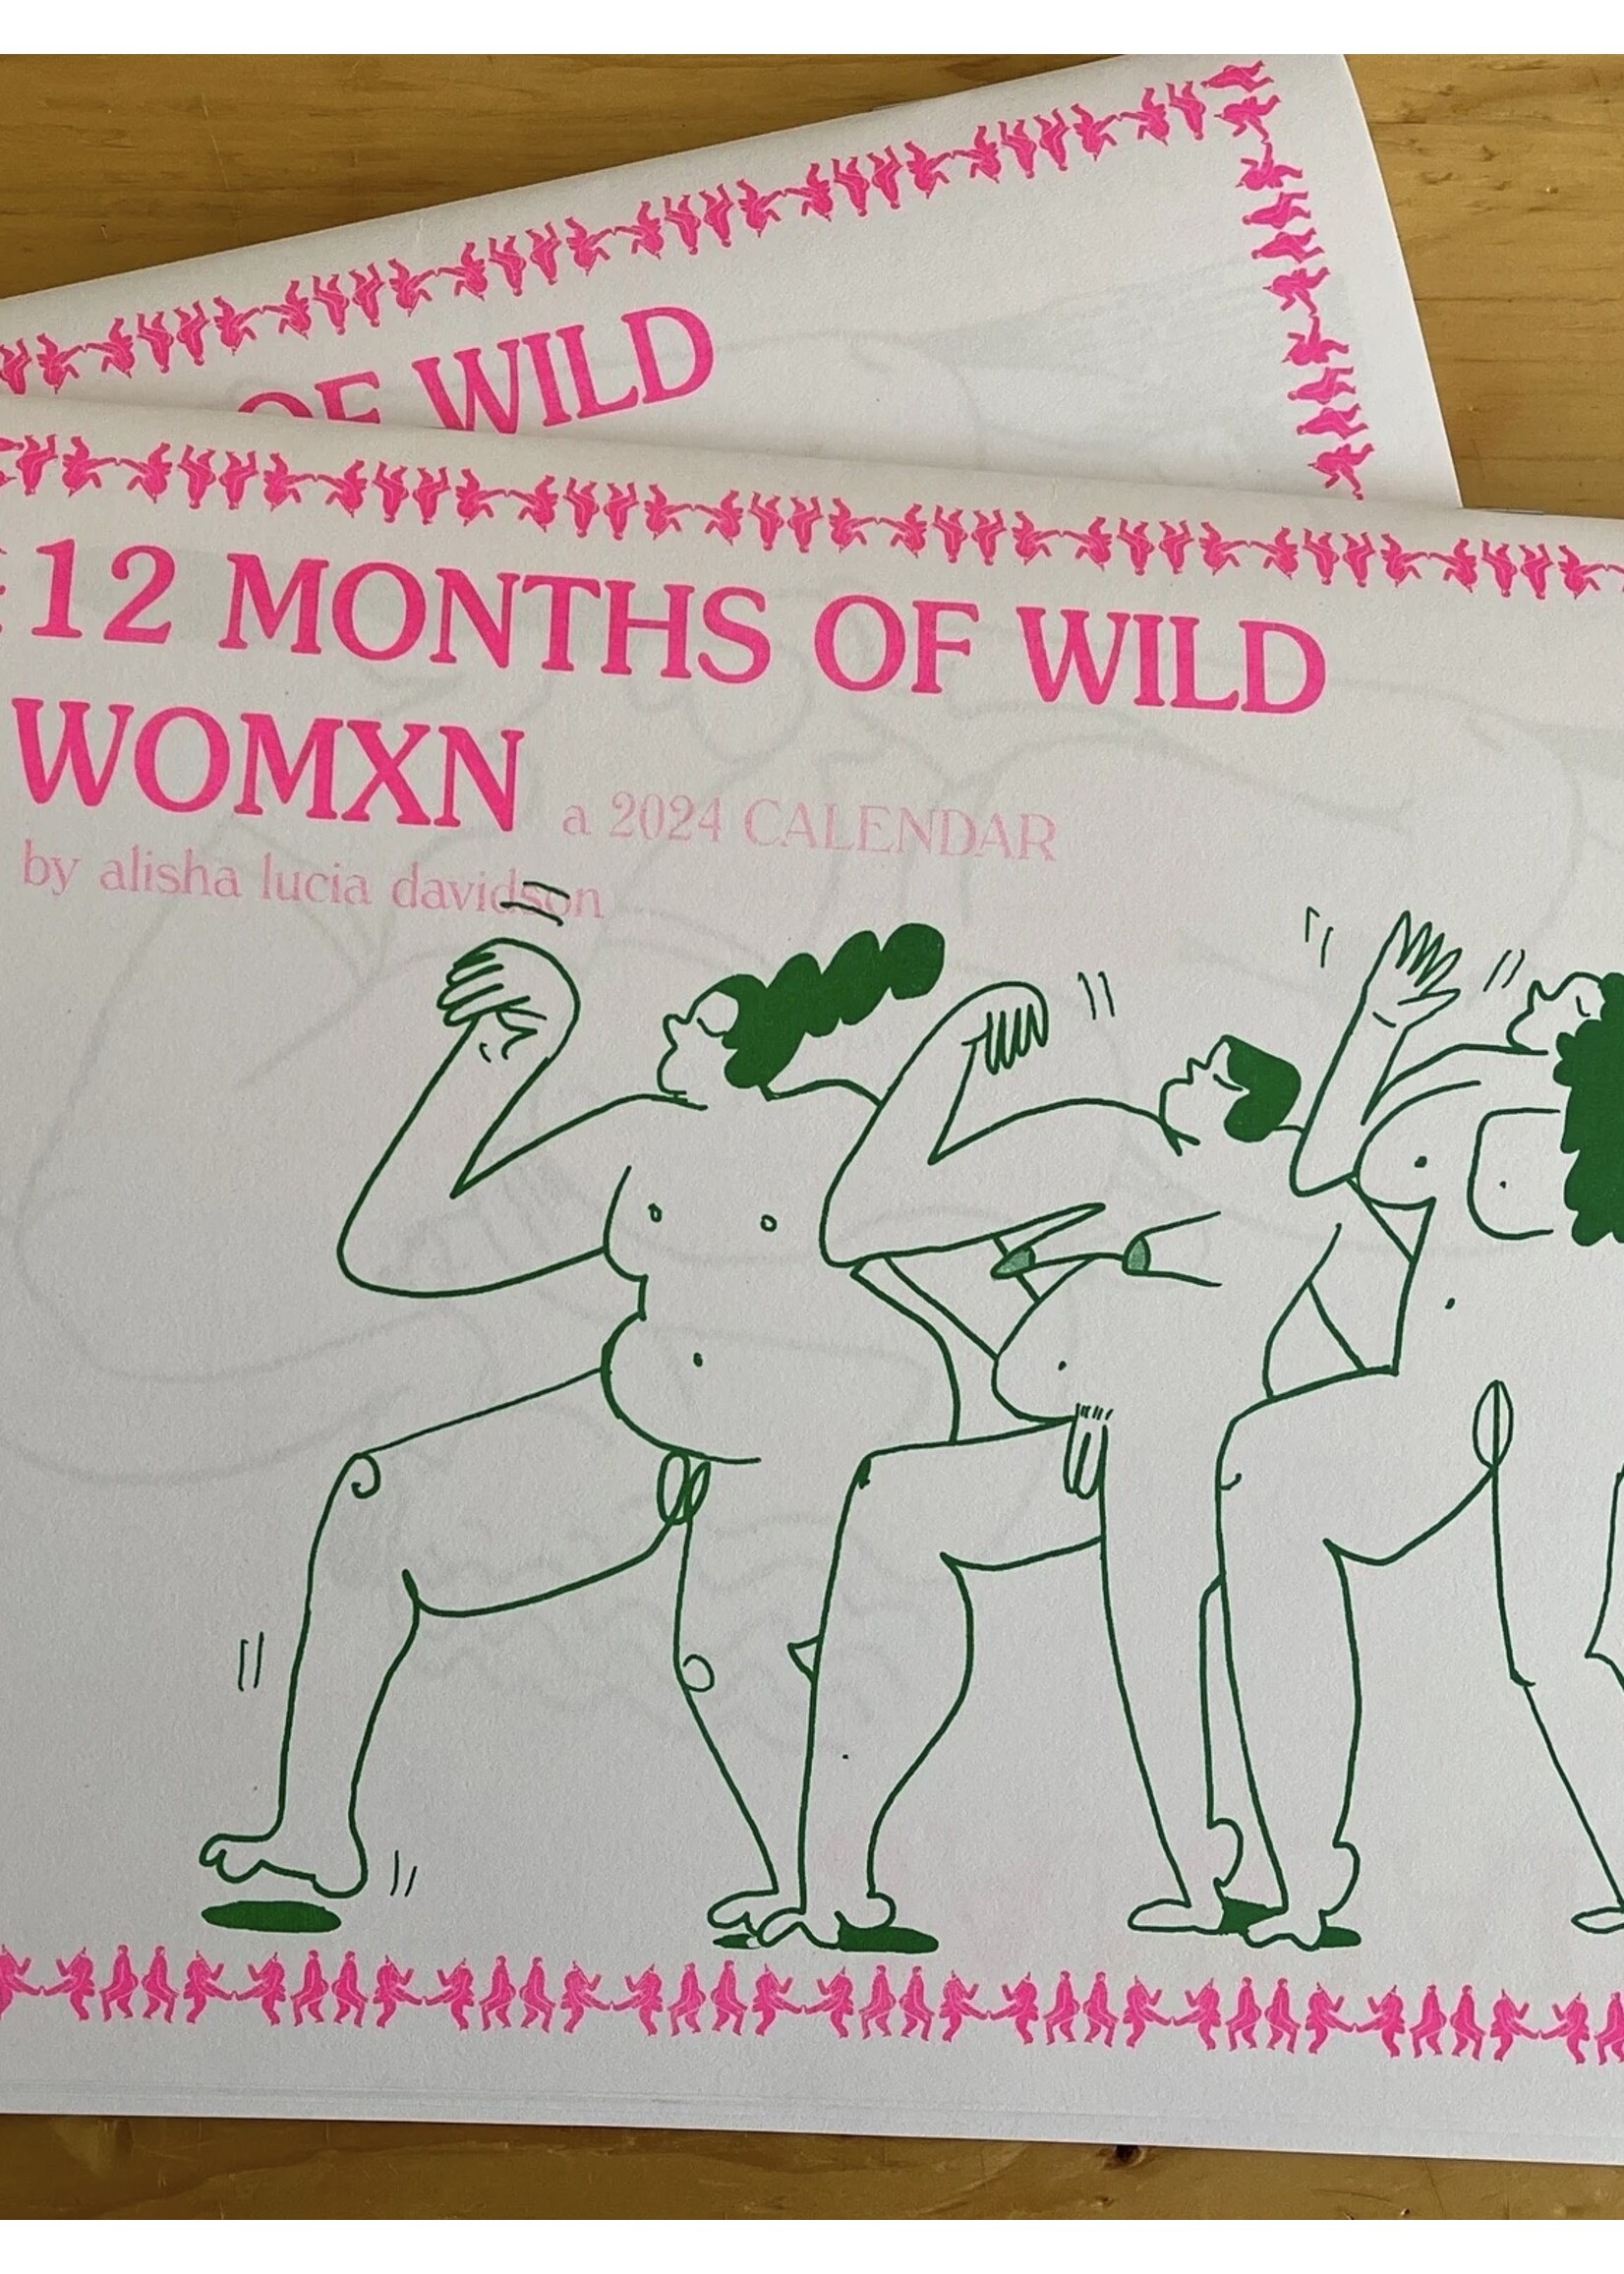 Alisha Davidson 2024 Calendar "Wild Womxn" by ALISHA